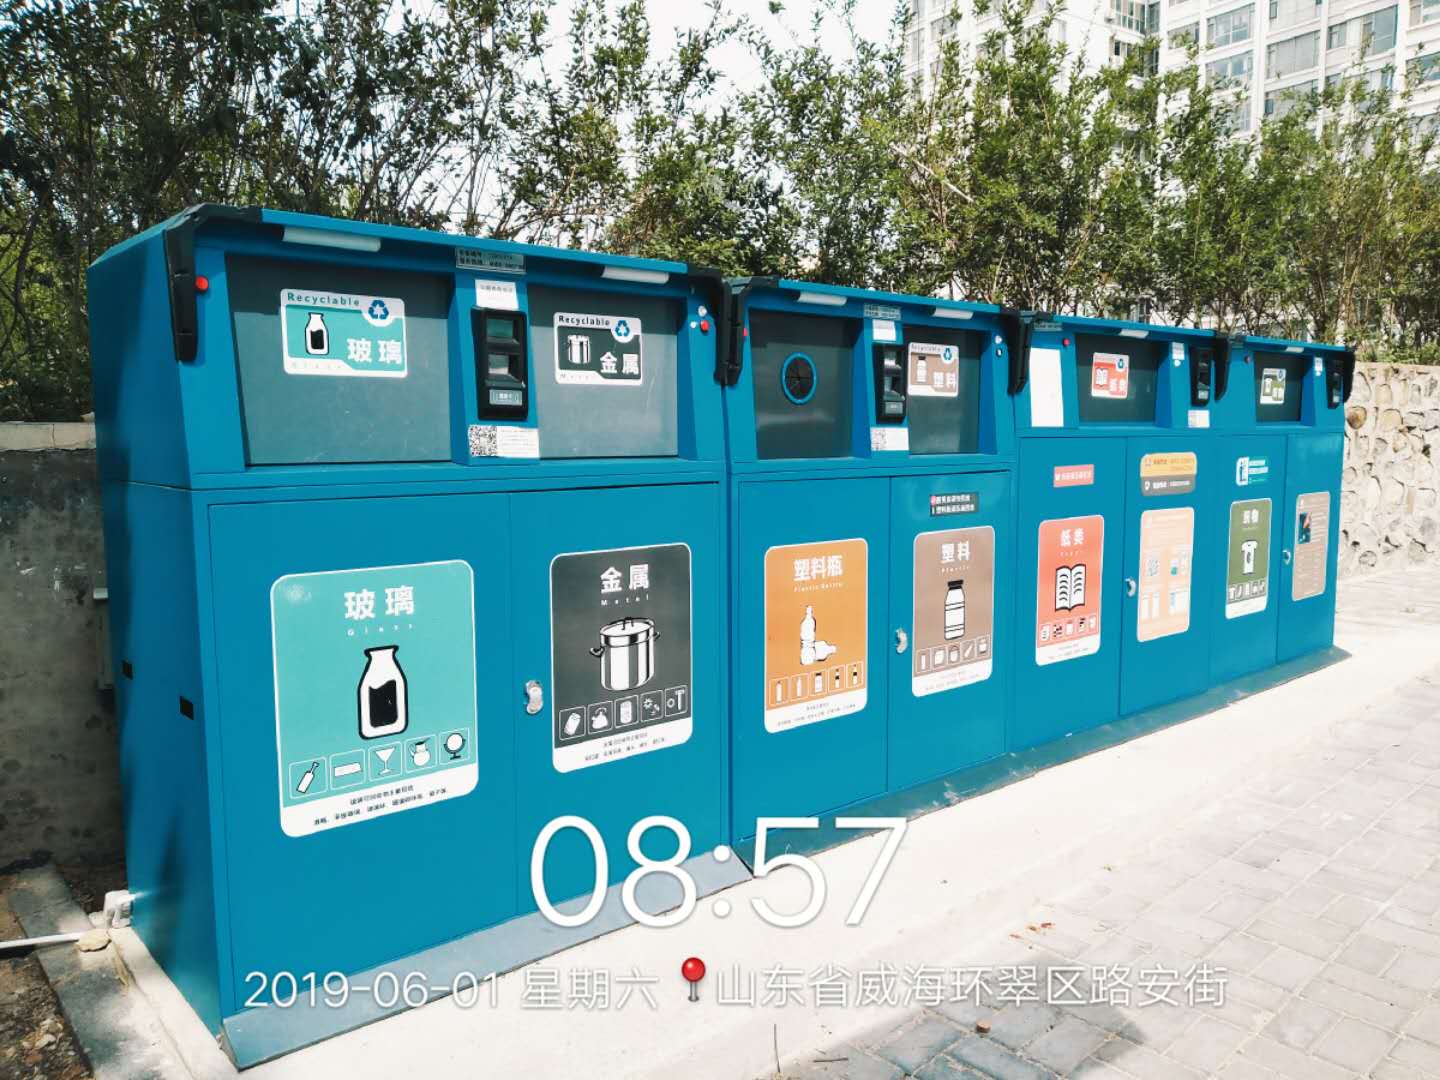 智能分类垃圾桶,郑州智能分类垃圾桶,智能分类垃圾桶厂家,郑州智能分类垃圾桶厂家